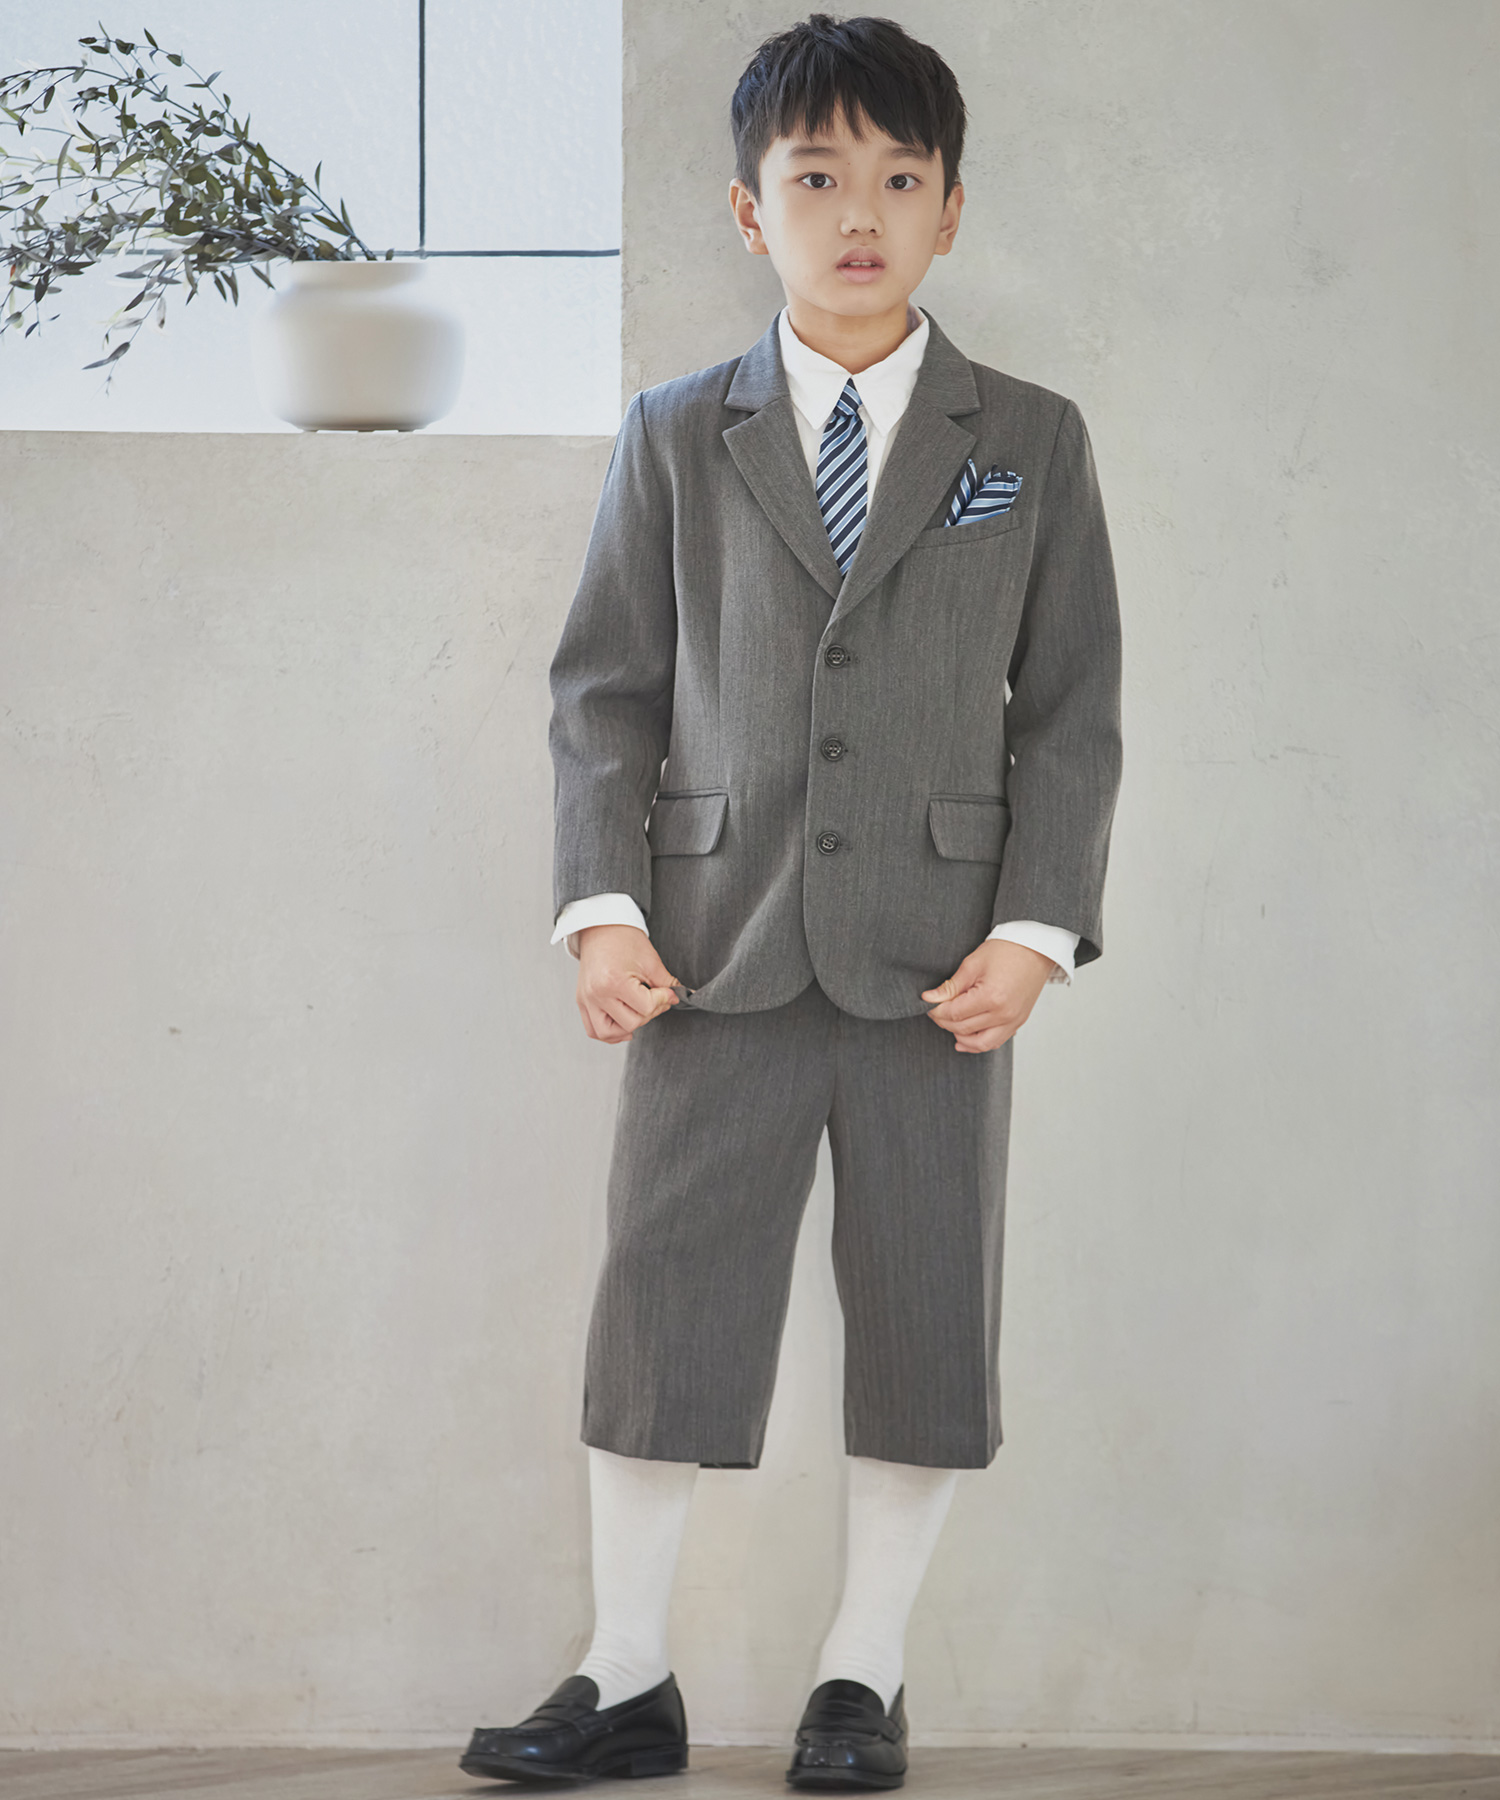 キッズフォーマル 男児 男の子 キッズスーツ スーツセット入学式